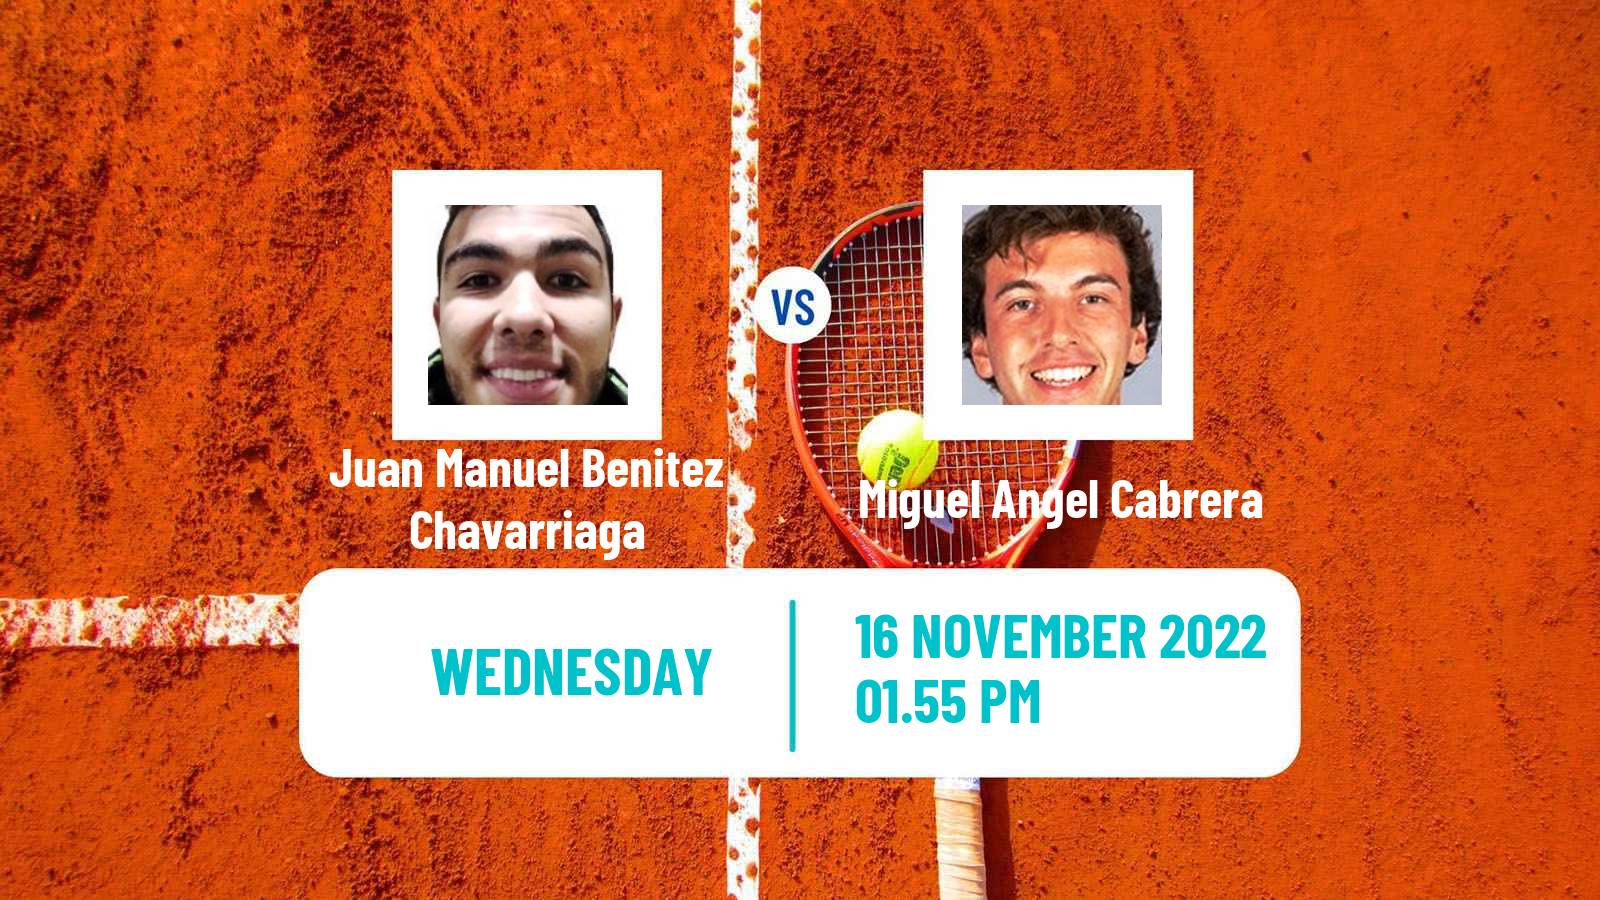 Tennis ITF Tournaments Juan Manuel Benitez Chavarriaga - Miguel Angel Cabrera